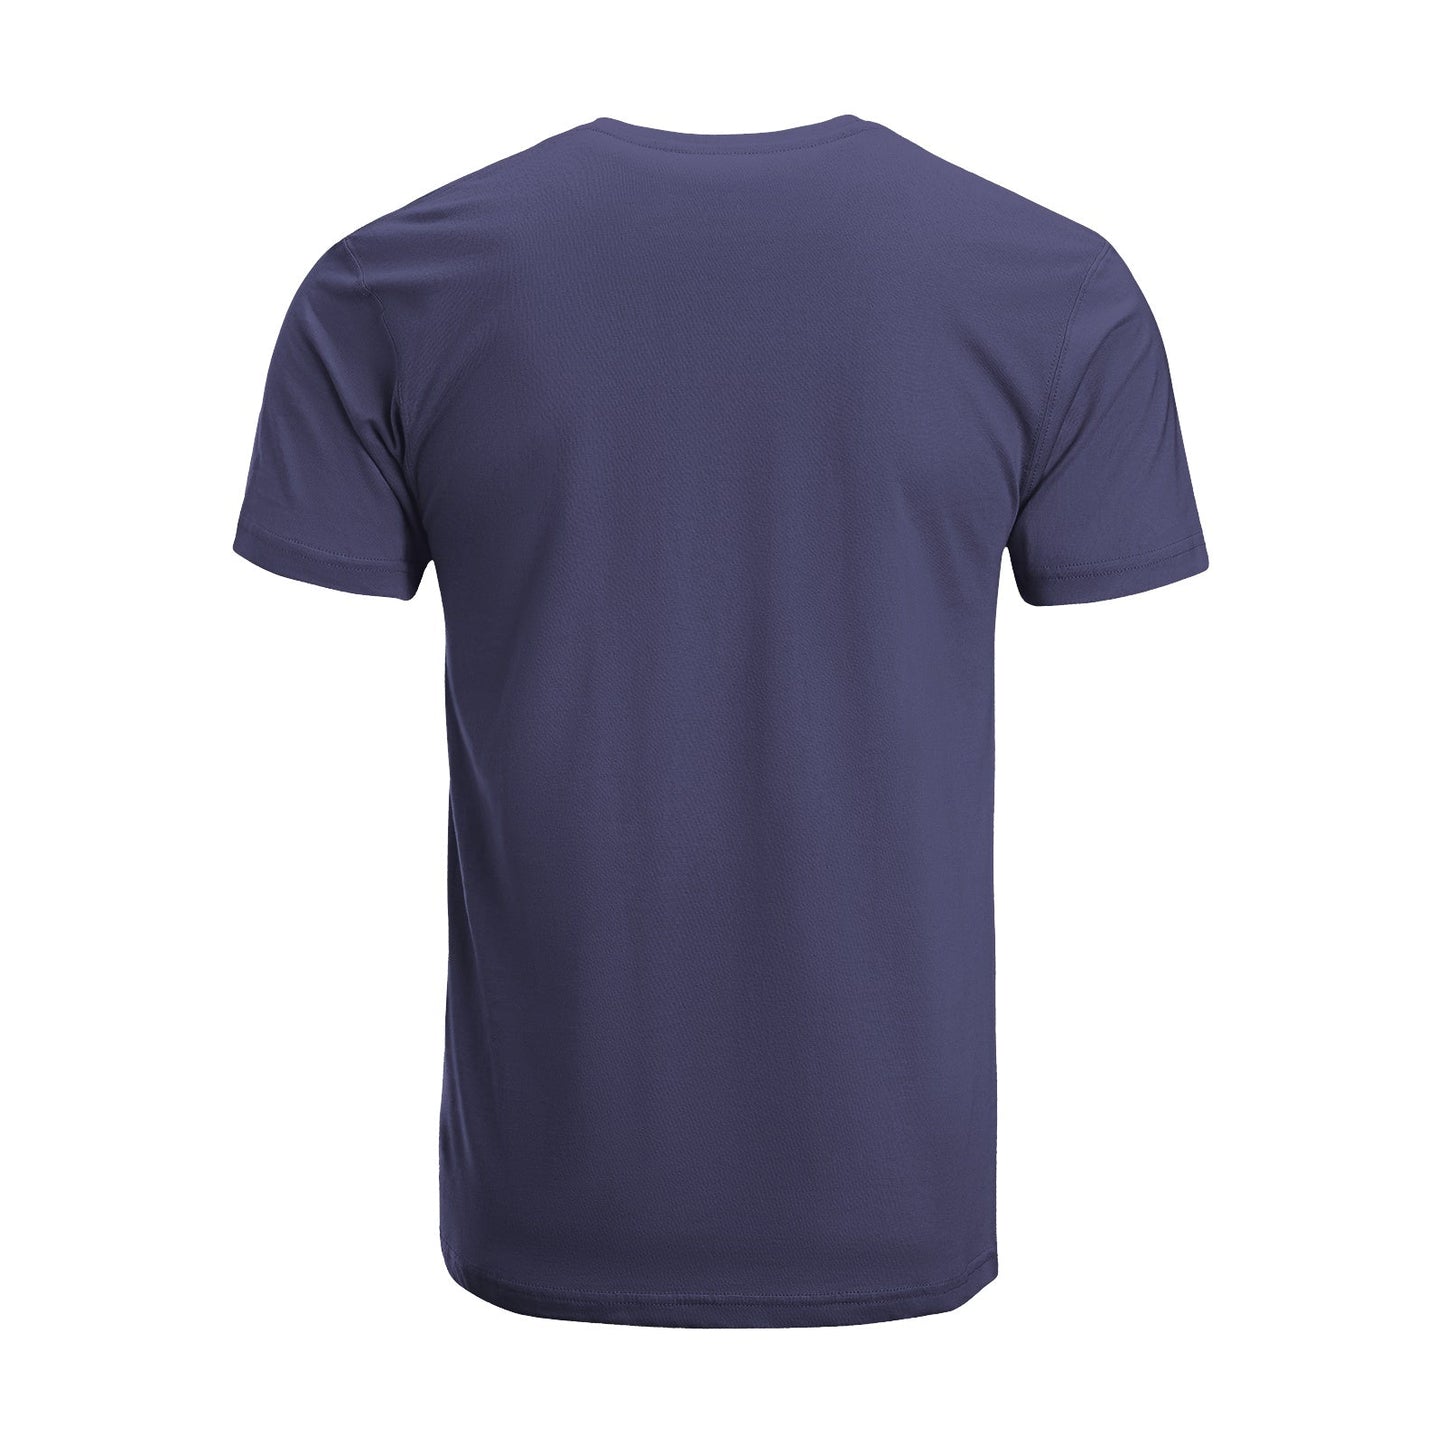 Unisex Short Sleeve Crew Neck Cotton Jersey T-Shirt TRUCK 12